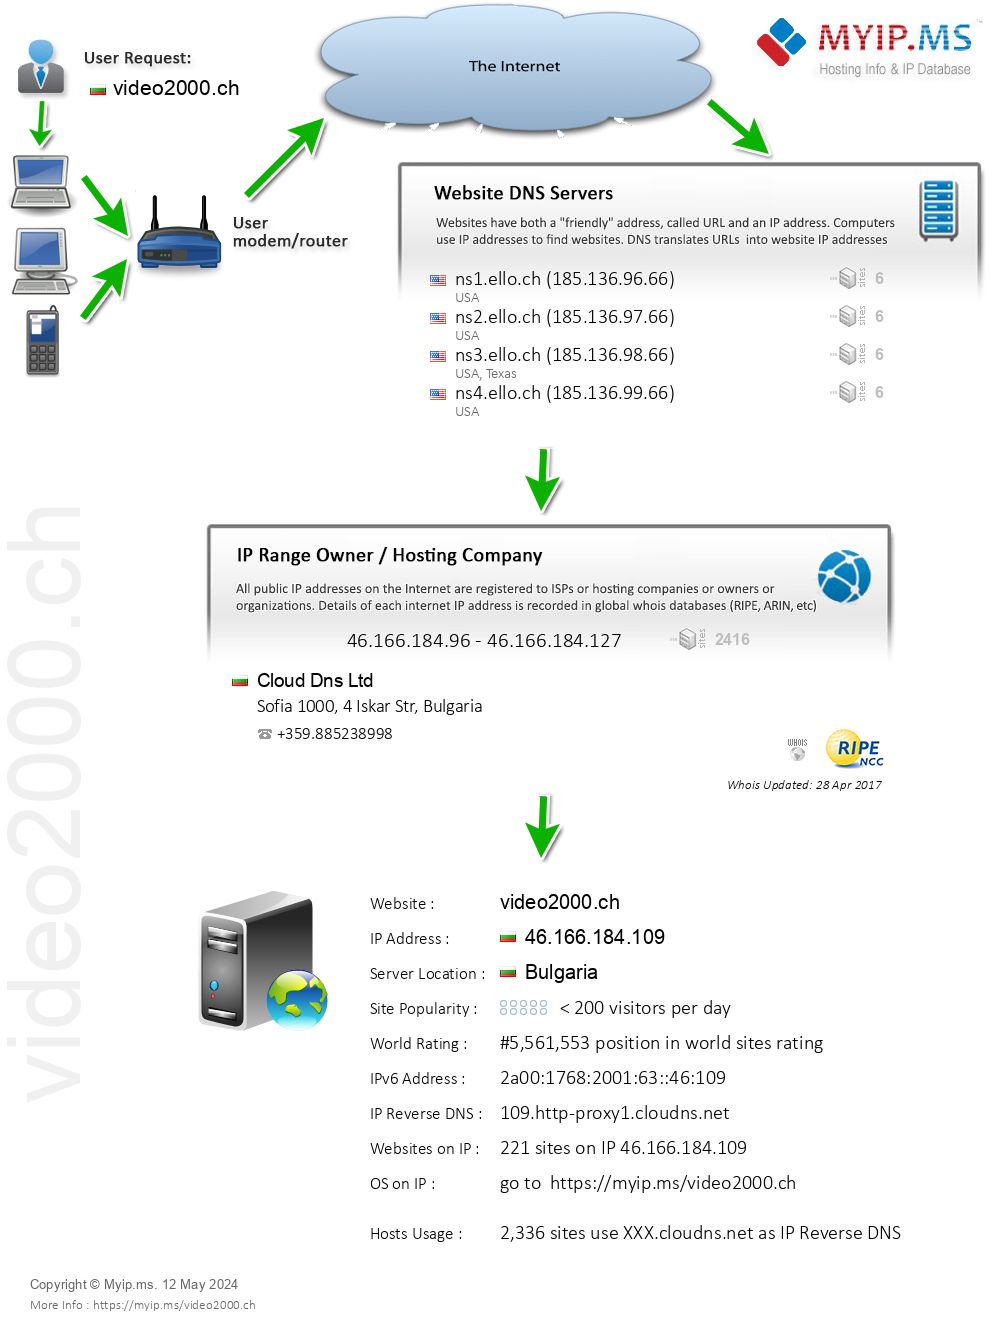 Video2000.ch - Website Hosting Visual IP Diagram